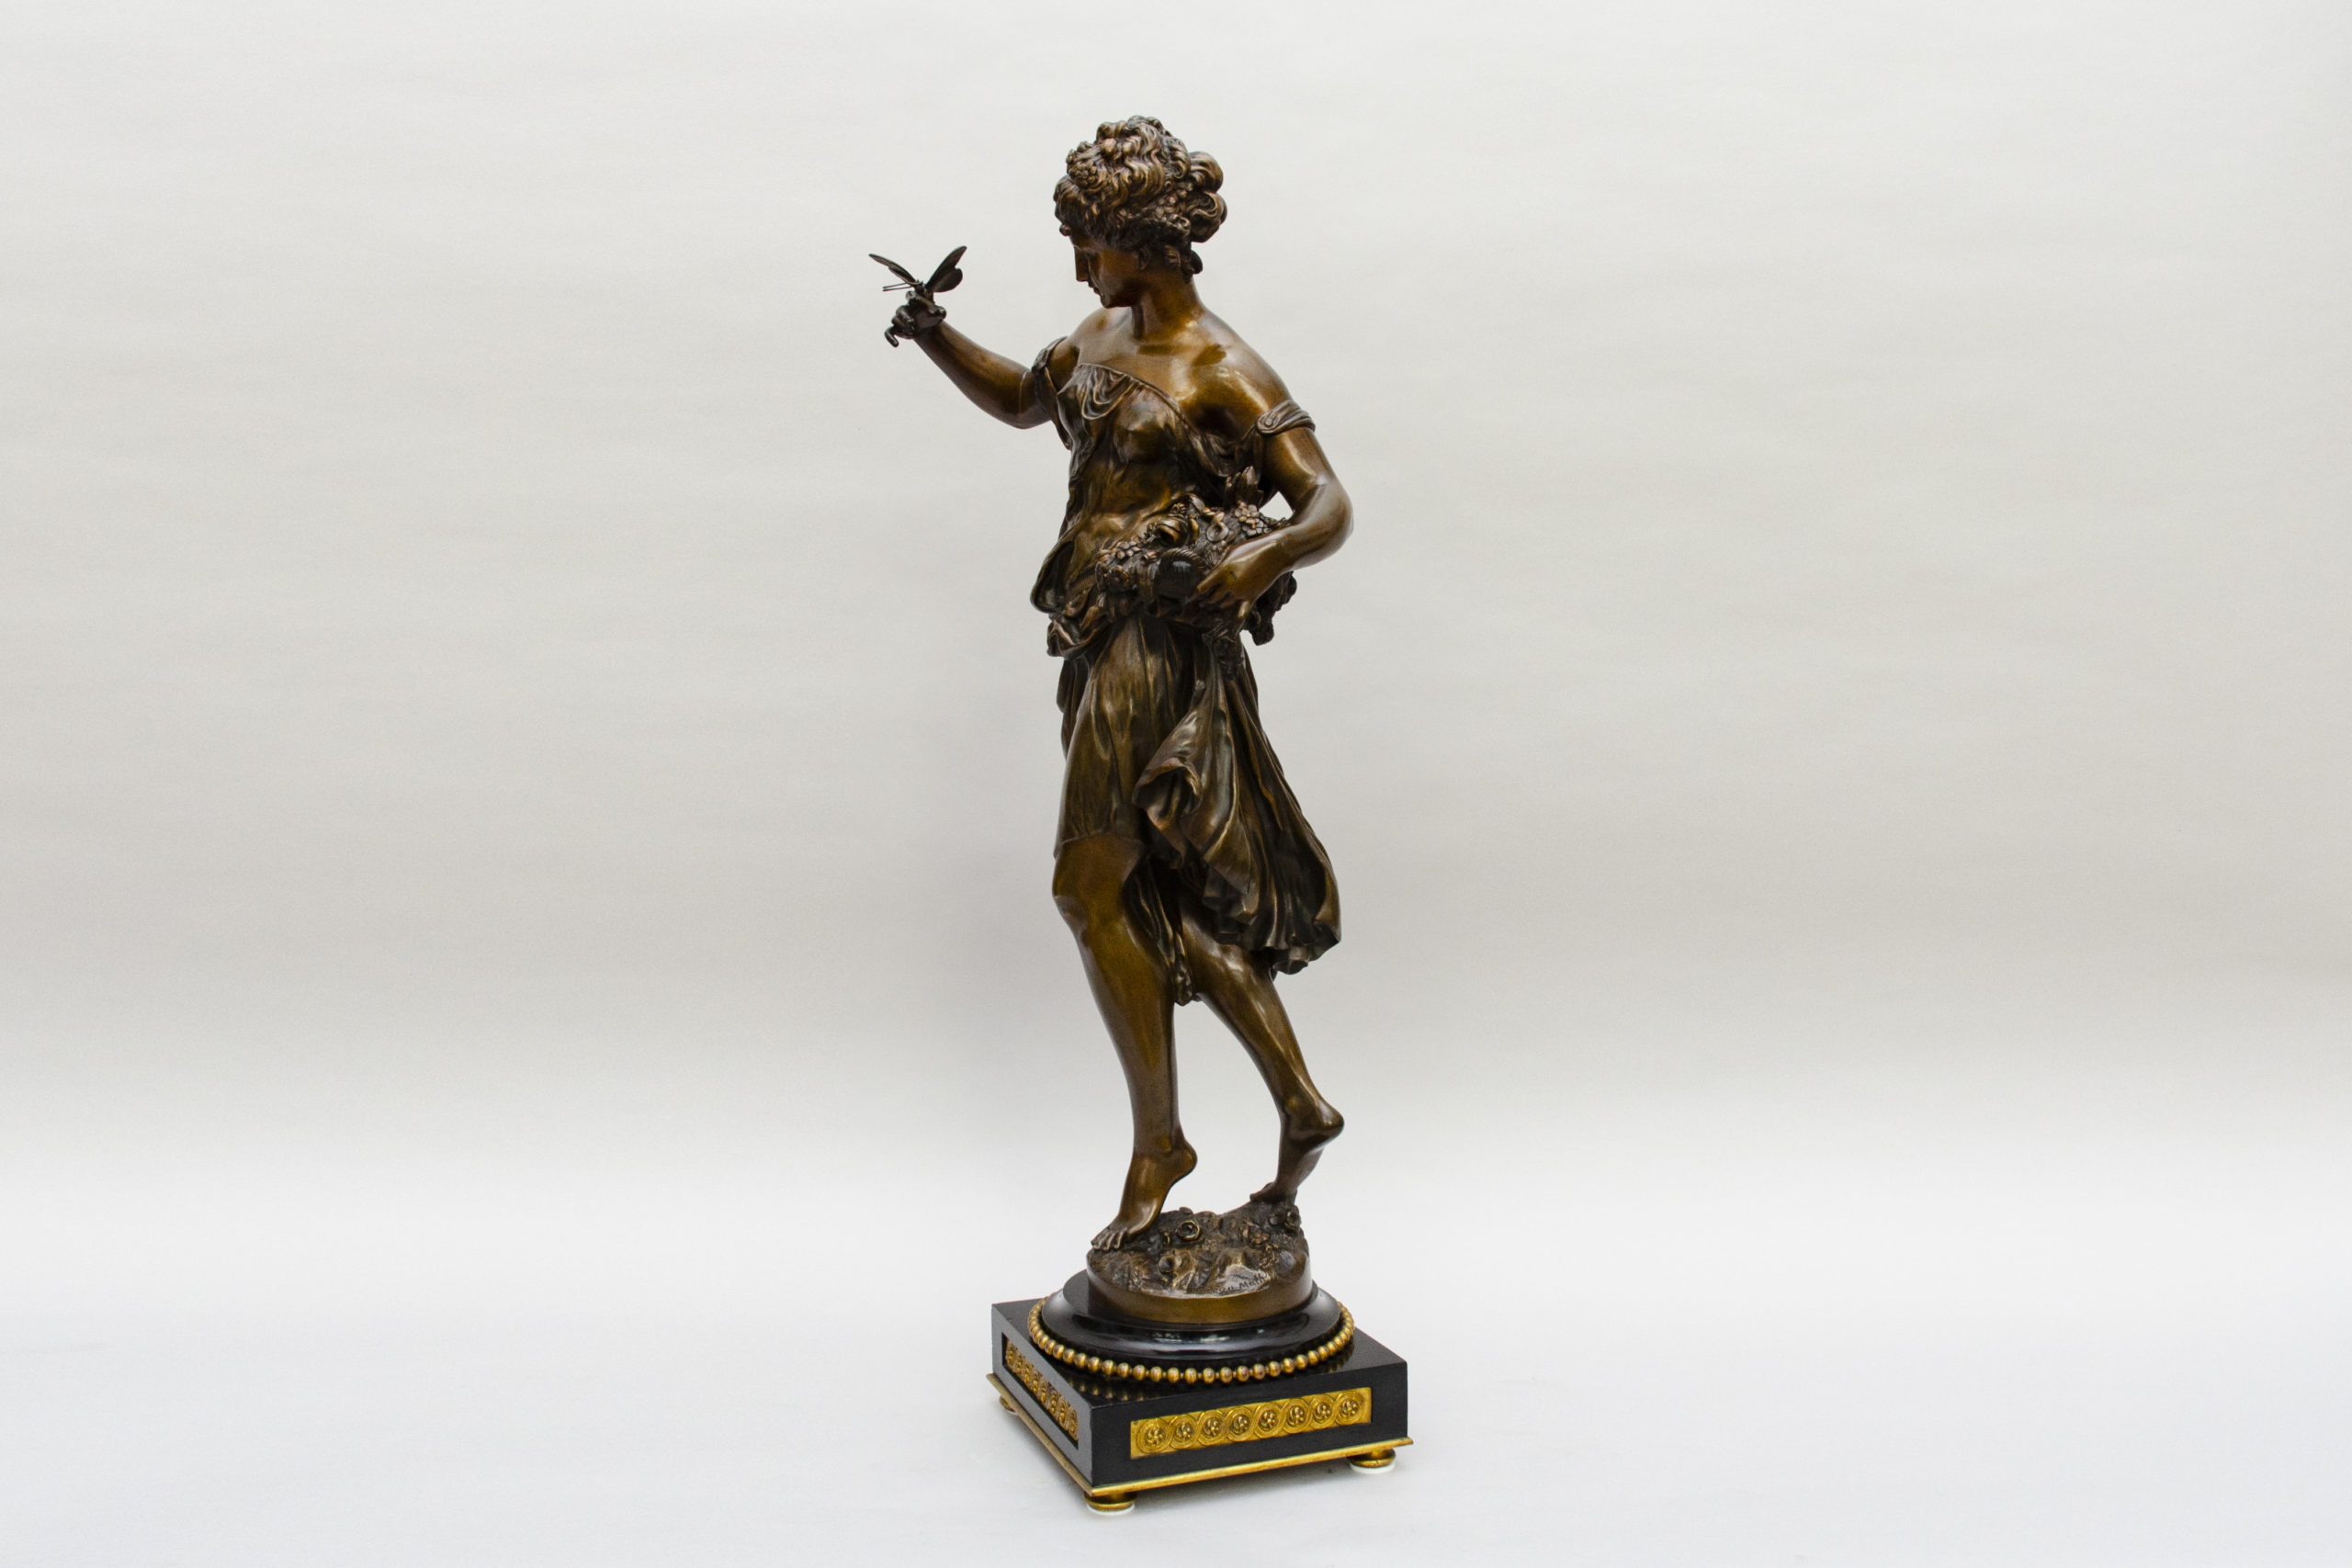 Overzicht evenwichtig Zeldzaamheid Flora" brons van Mathurin Moreau - L'Égide Antiques